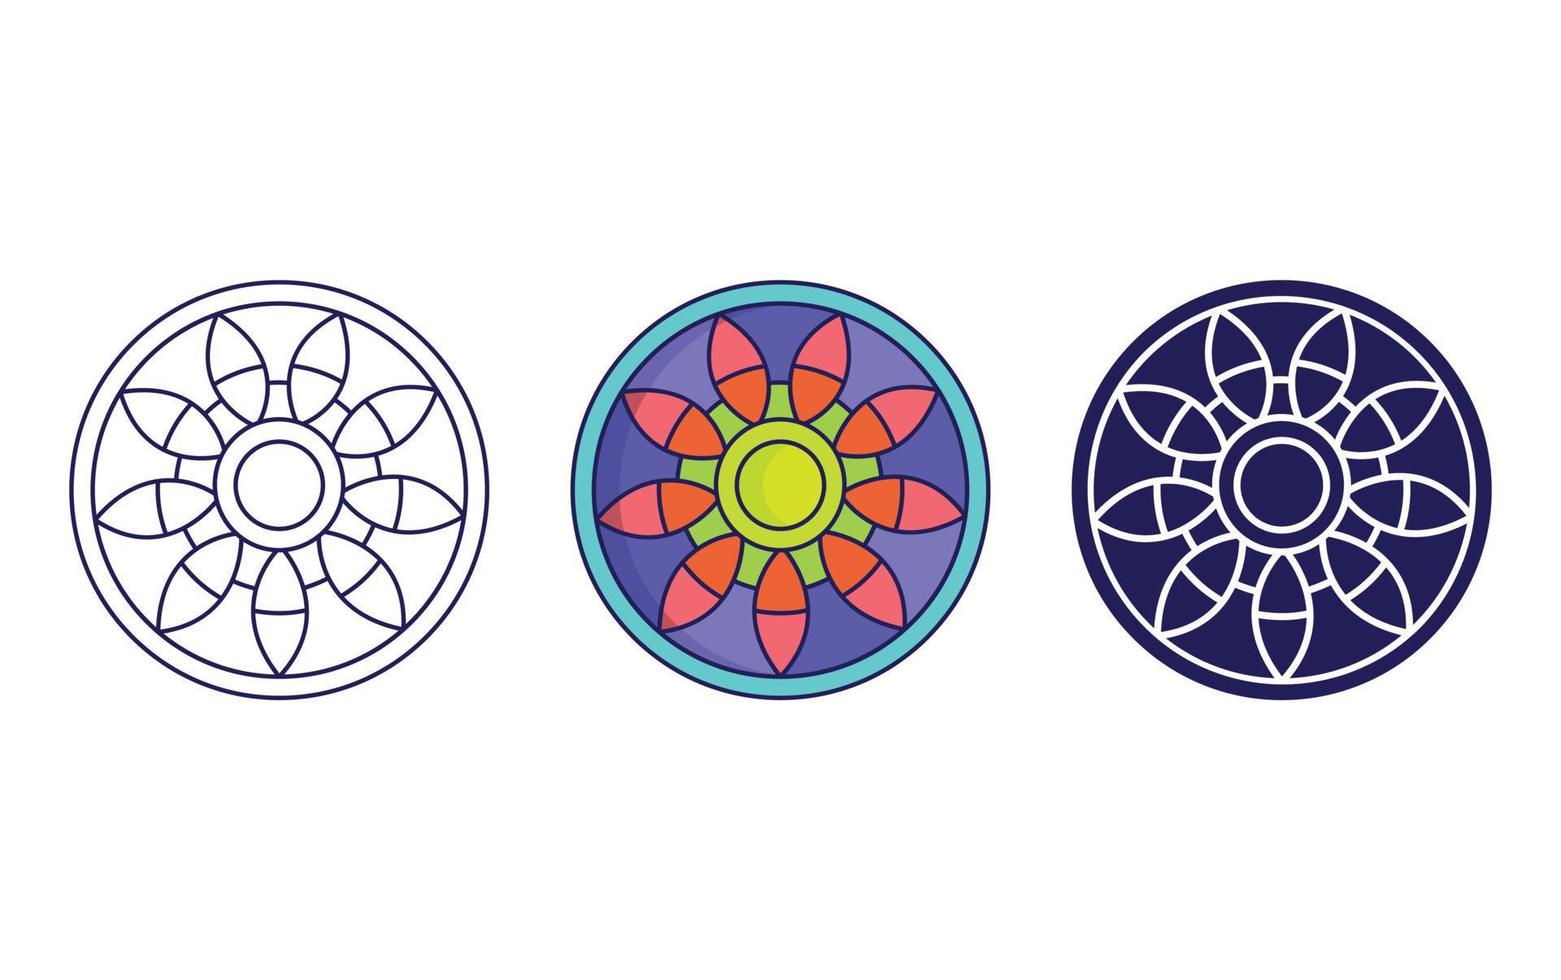 conception d'icône de mandala, vecteur d'ornement géométrique